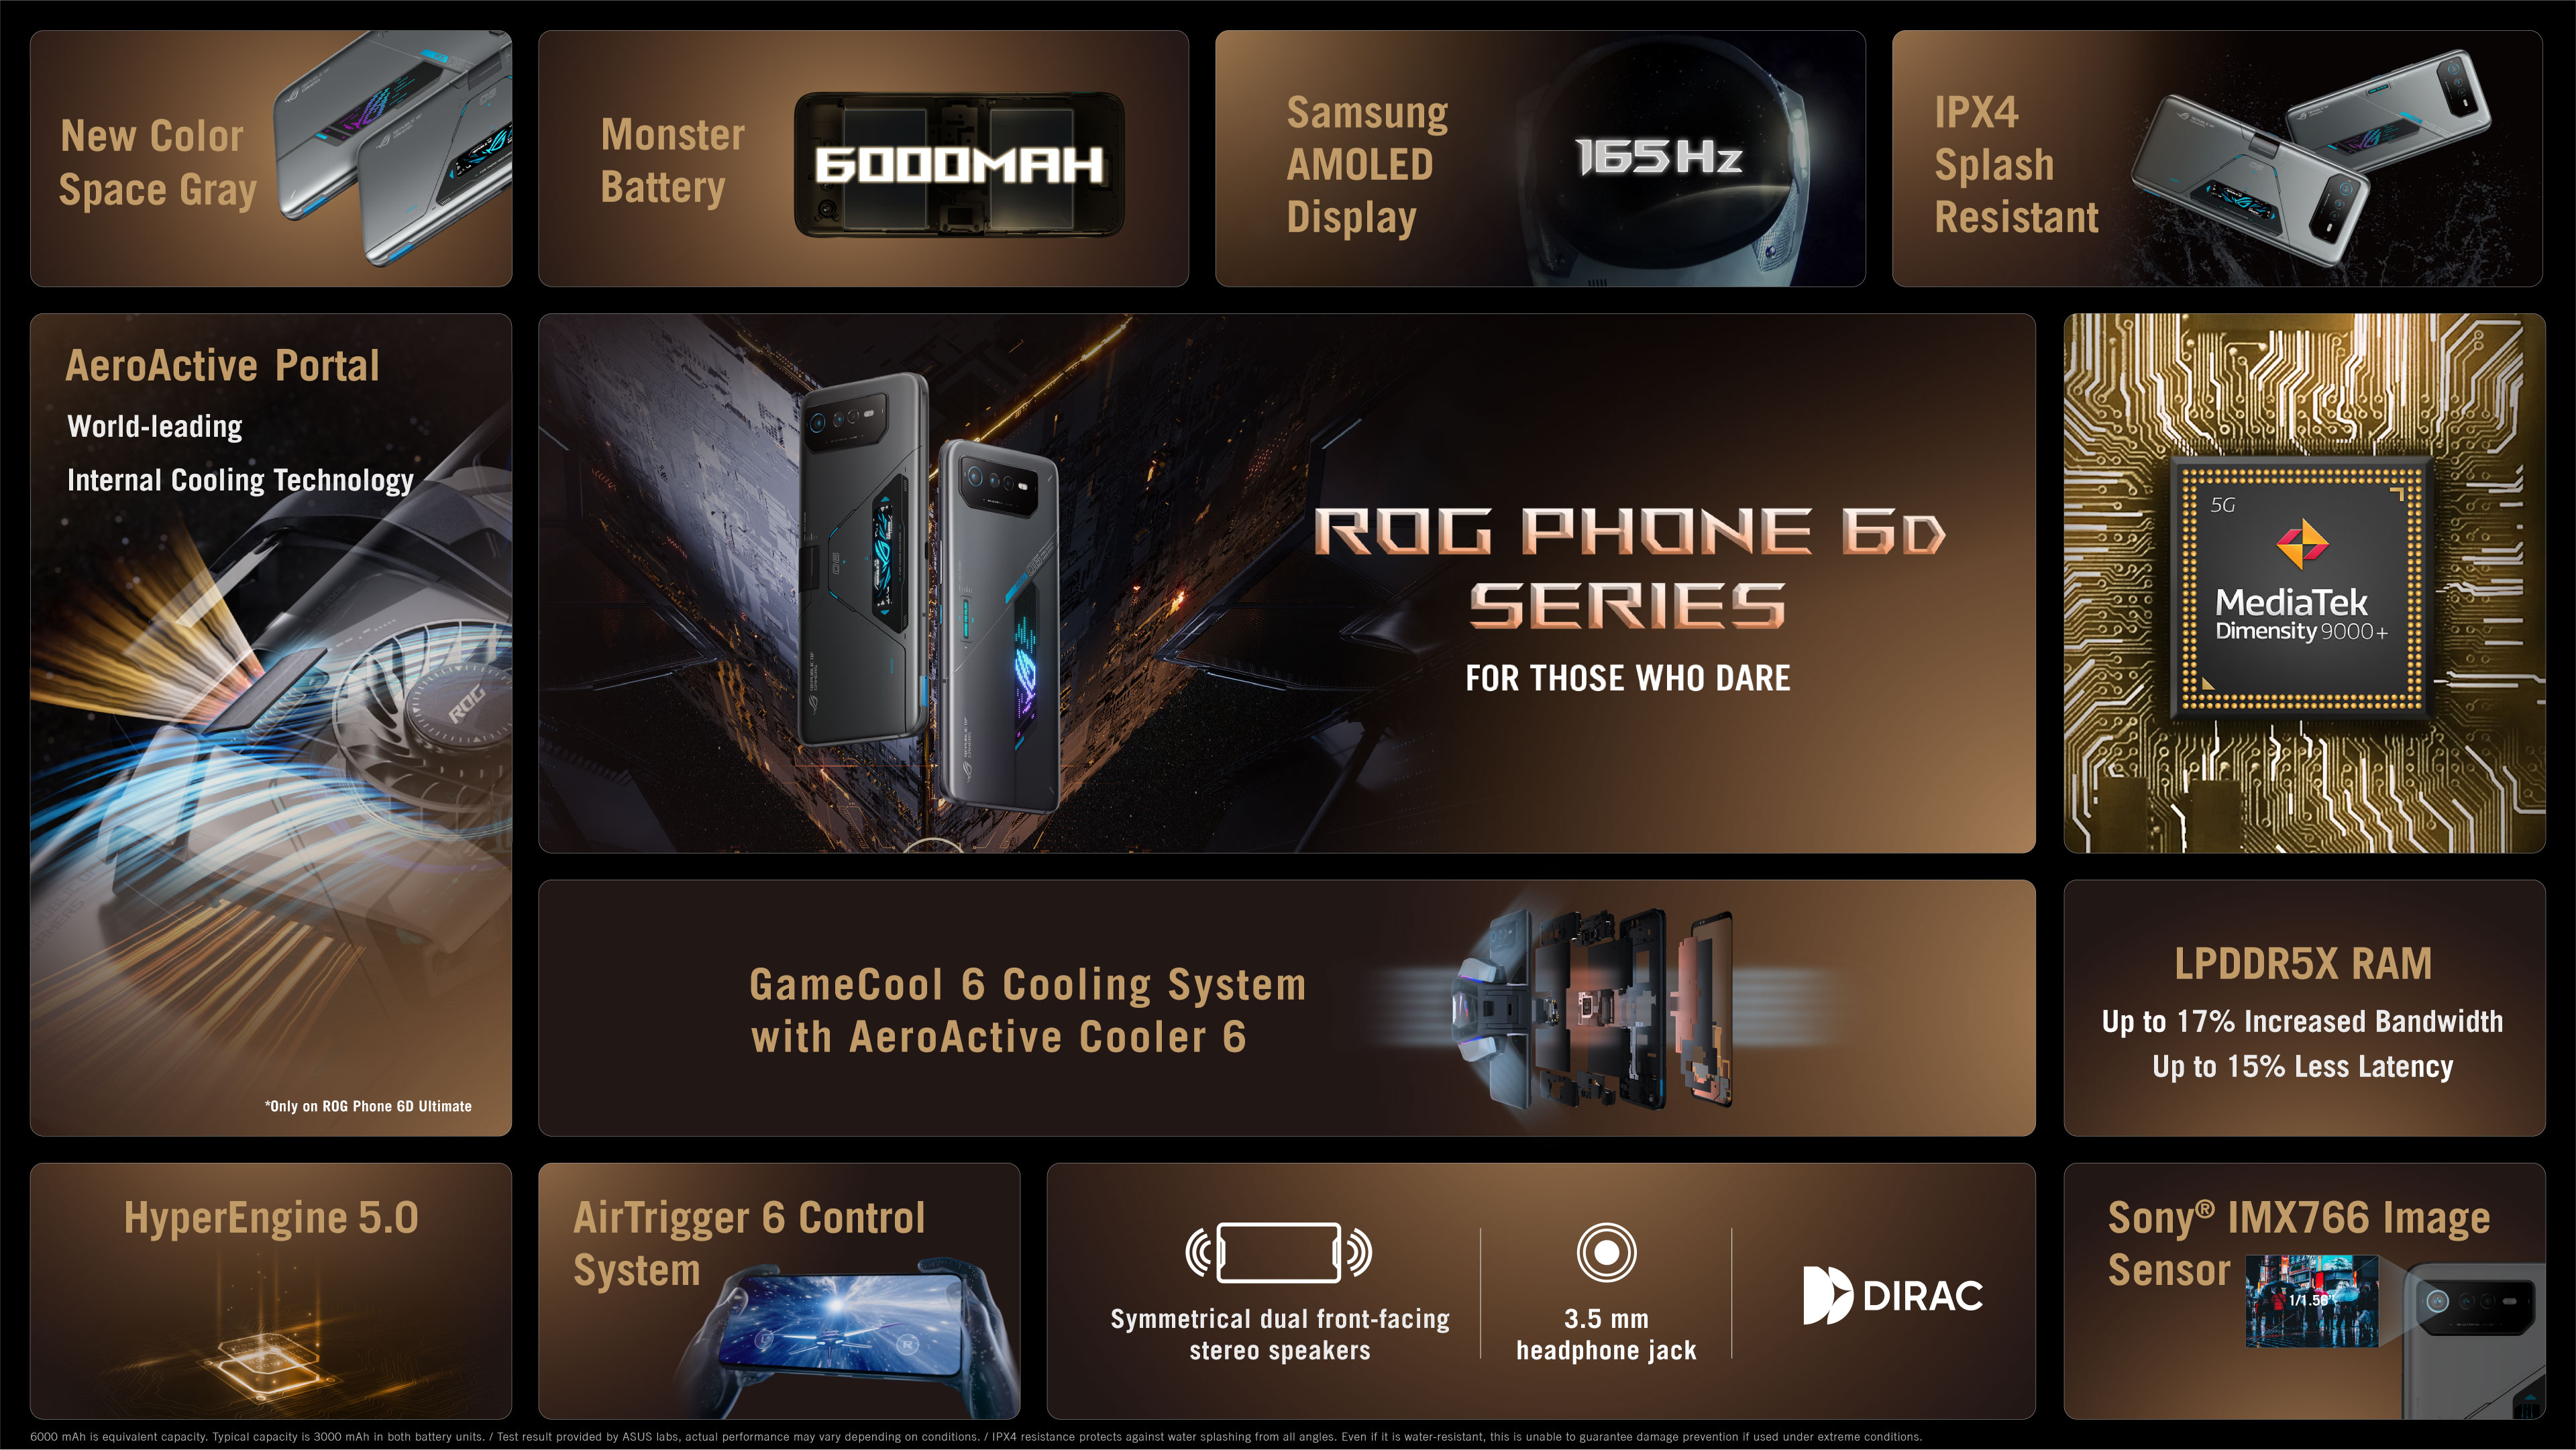 Asus Rog Phone 6D Ultimate